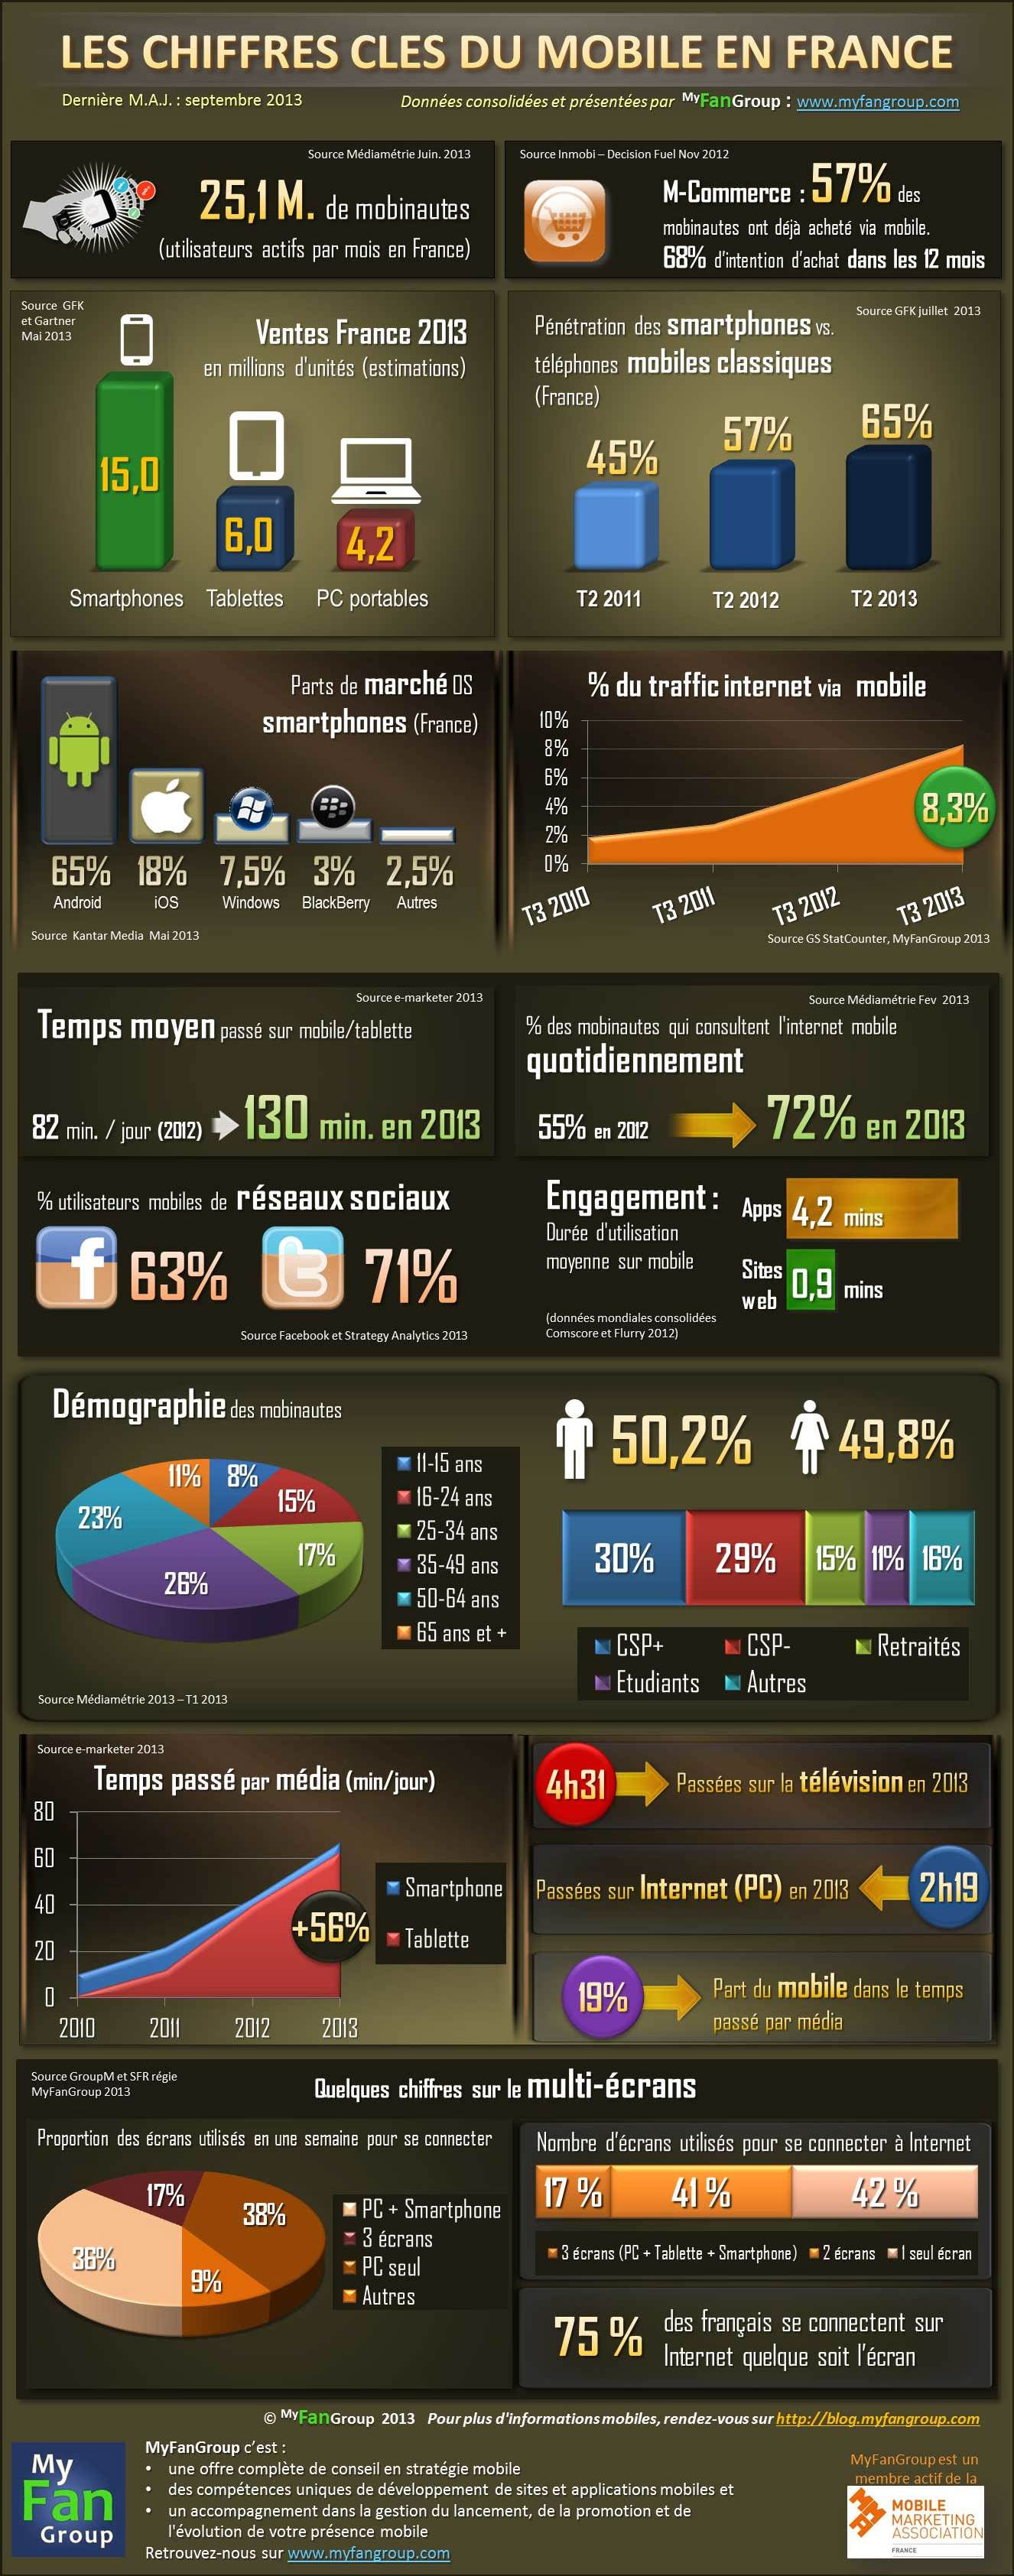 Infographie Myfangroup : les chiffres clés du mobile en France